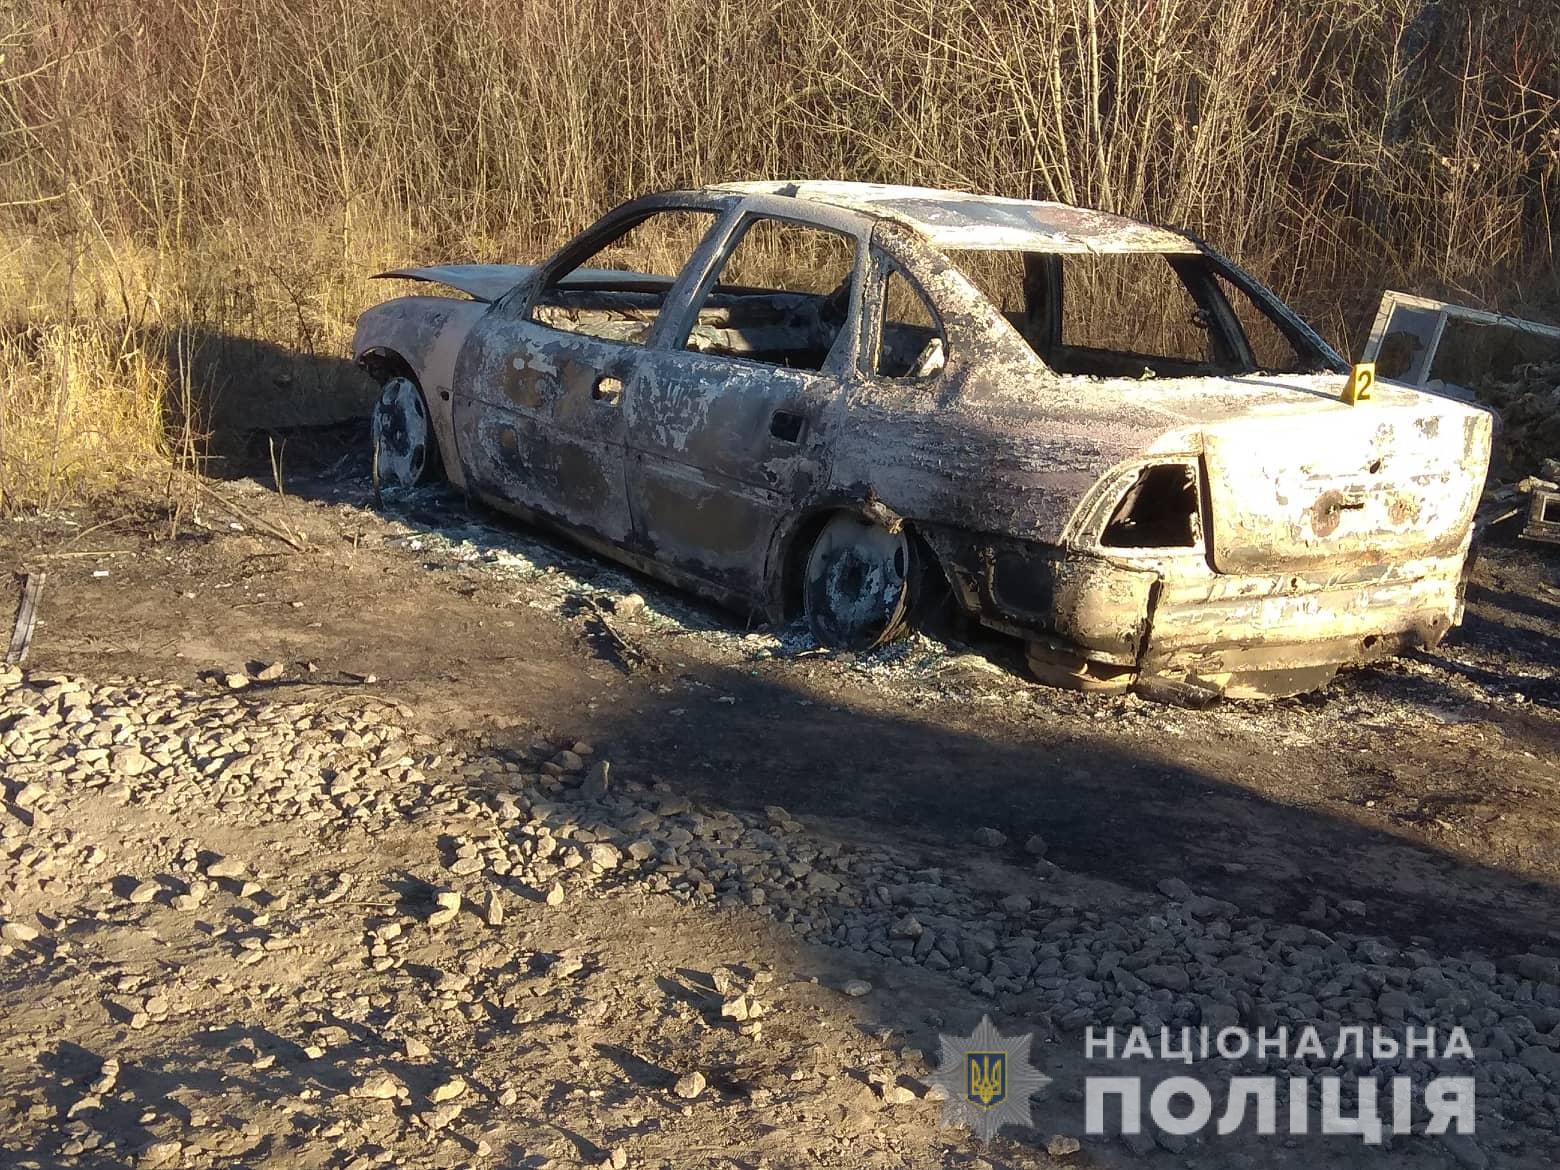 Взрыв в Харькове. Авто вероятных злоумышленников нашли сожженным